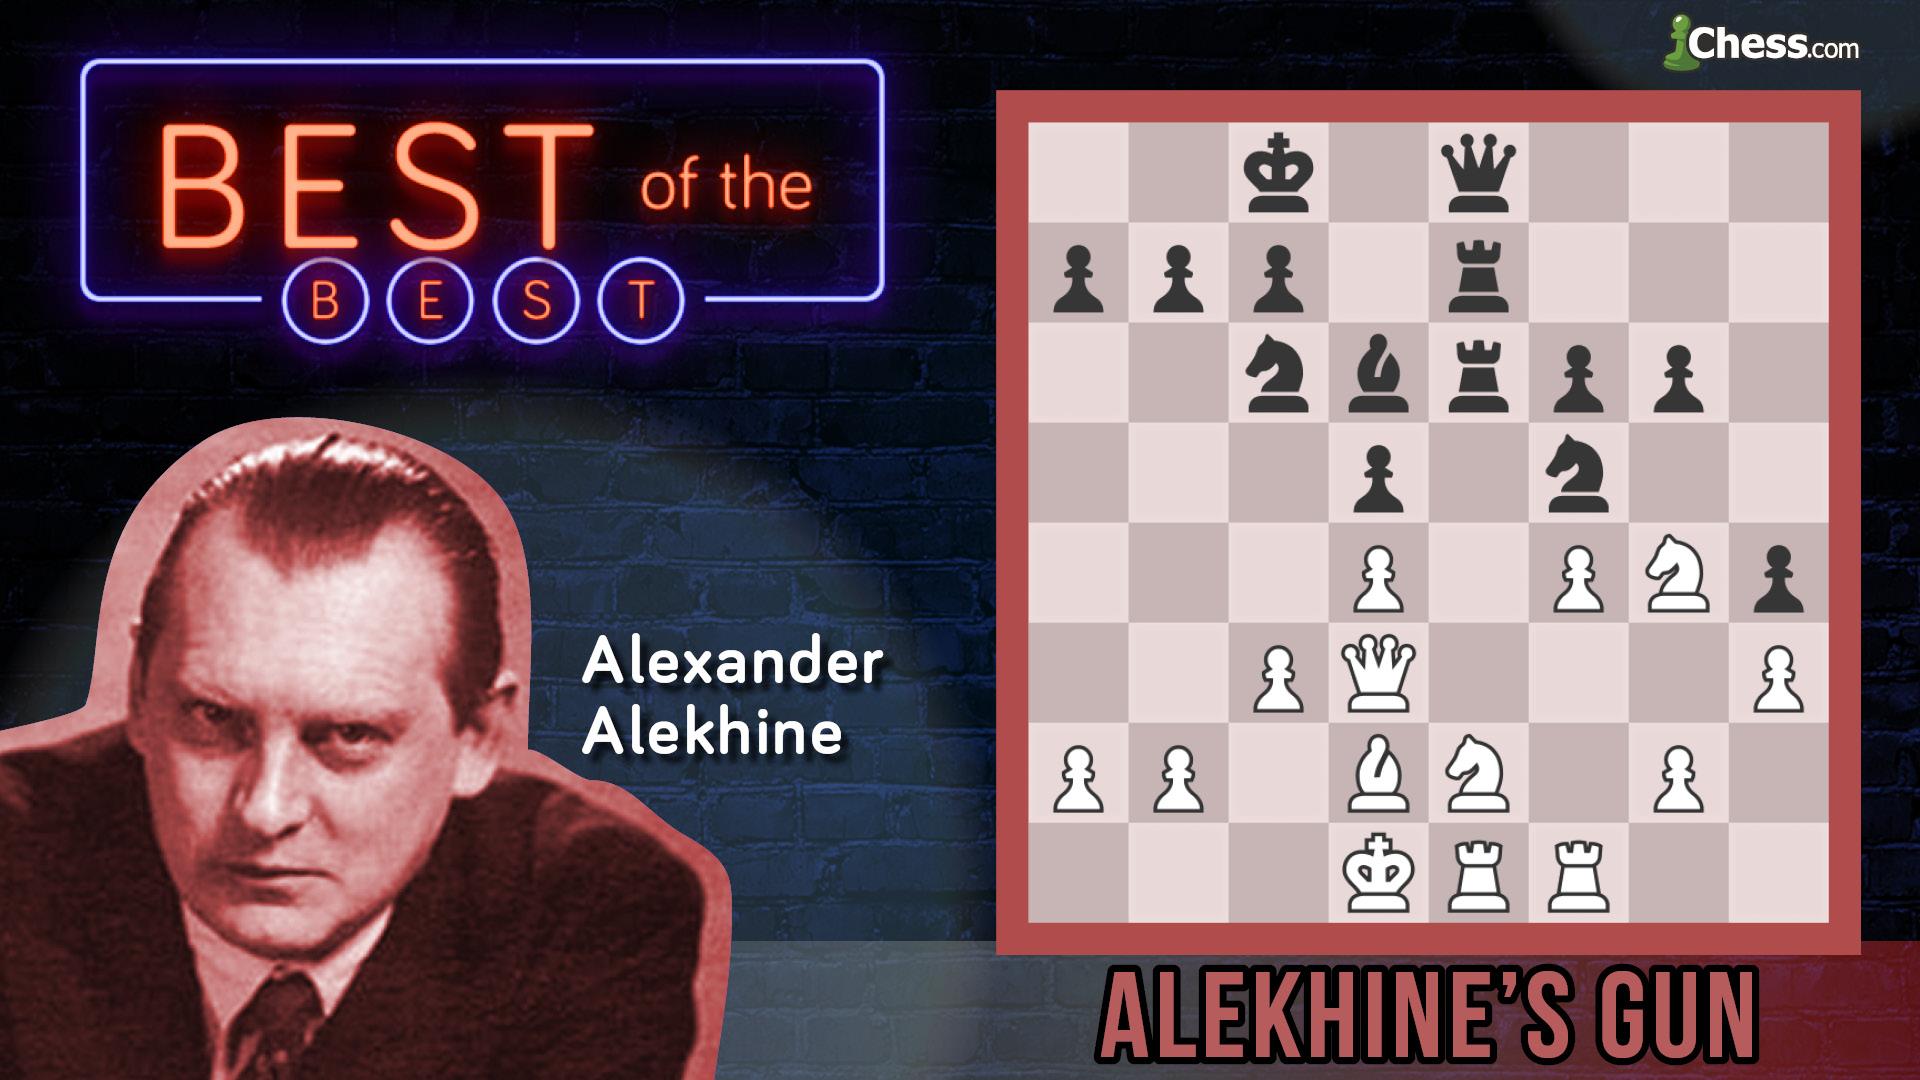 Help, I made an Alekhine's Gun but my opponent made an Alekhine's